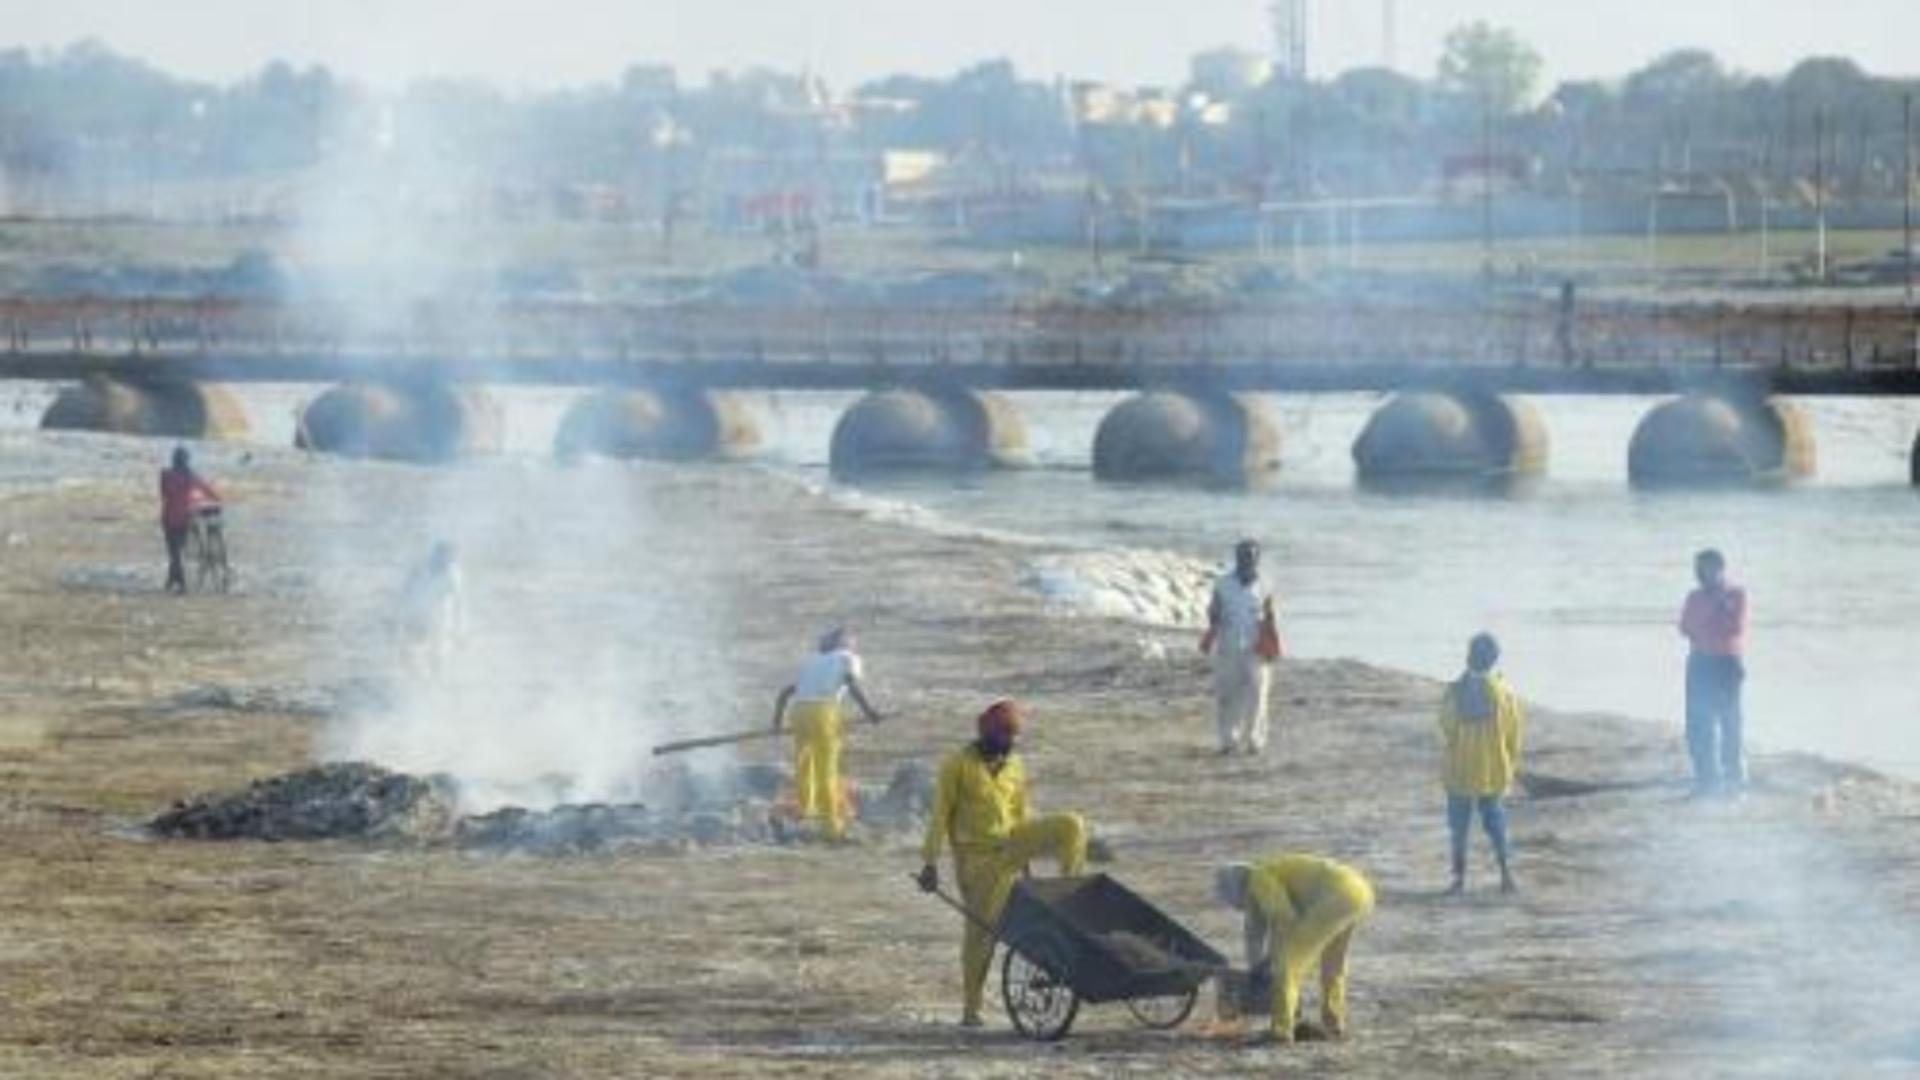 Fluviul Gange - acoperit de o plasă după descoperirea mai multor cadavre suspecte de COVID-19 Foto: Twitter.com